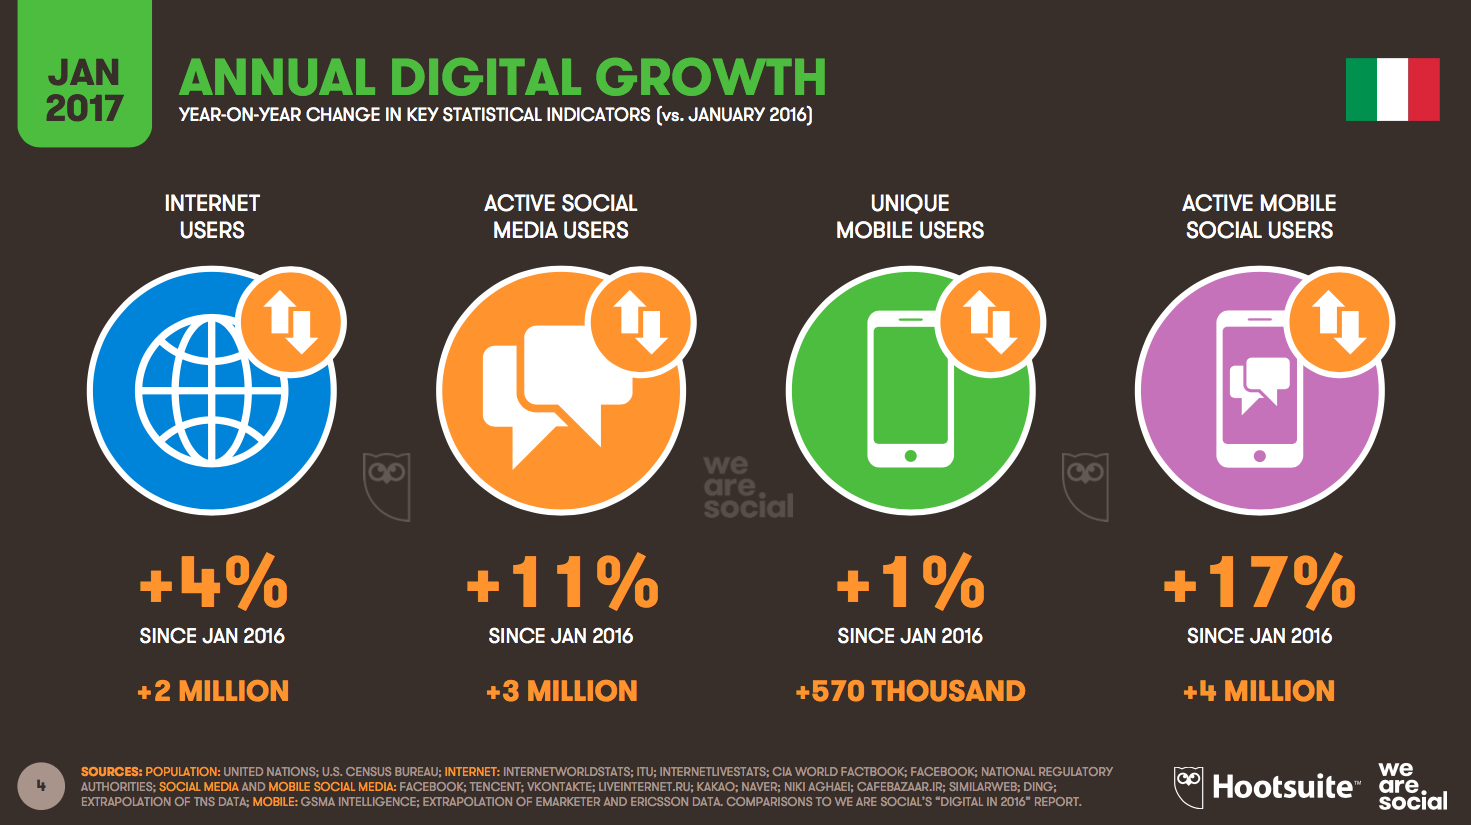 Annual Digital Growth